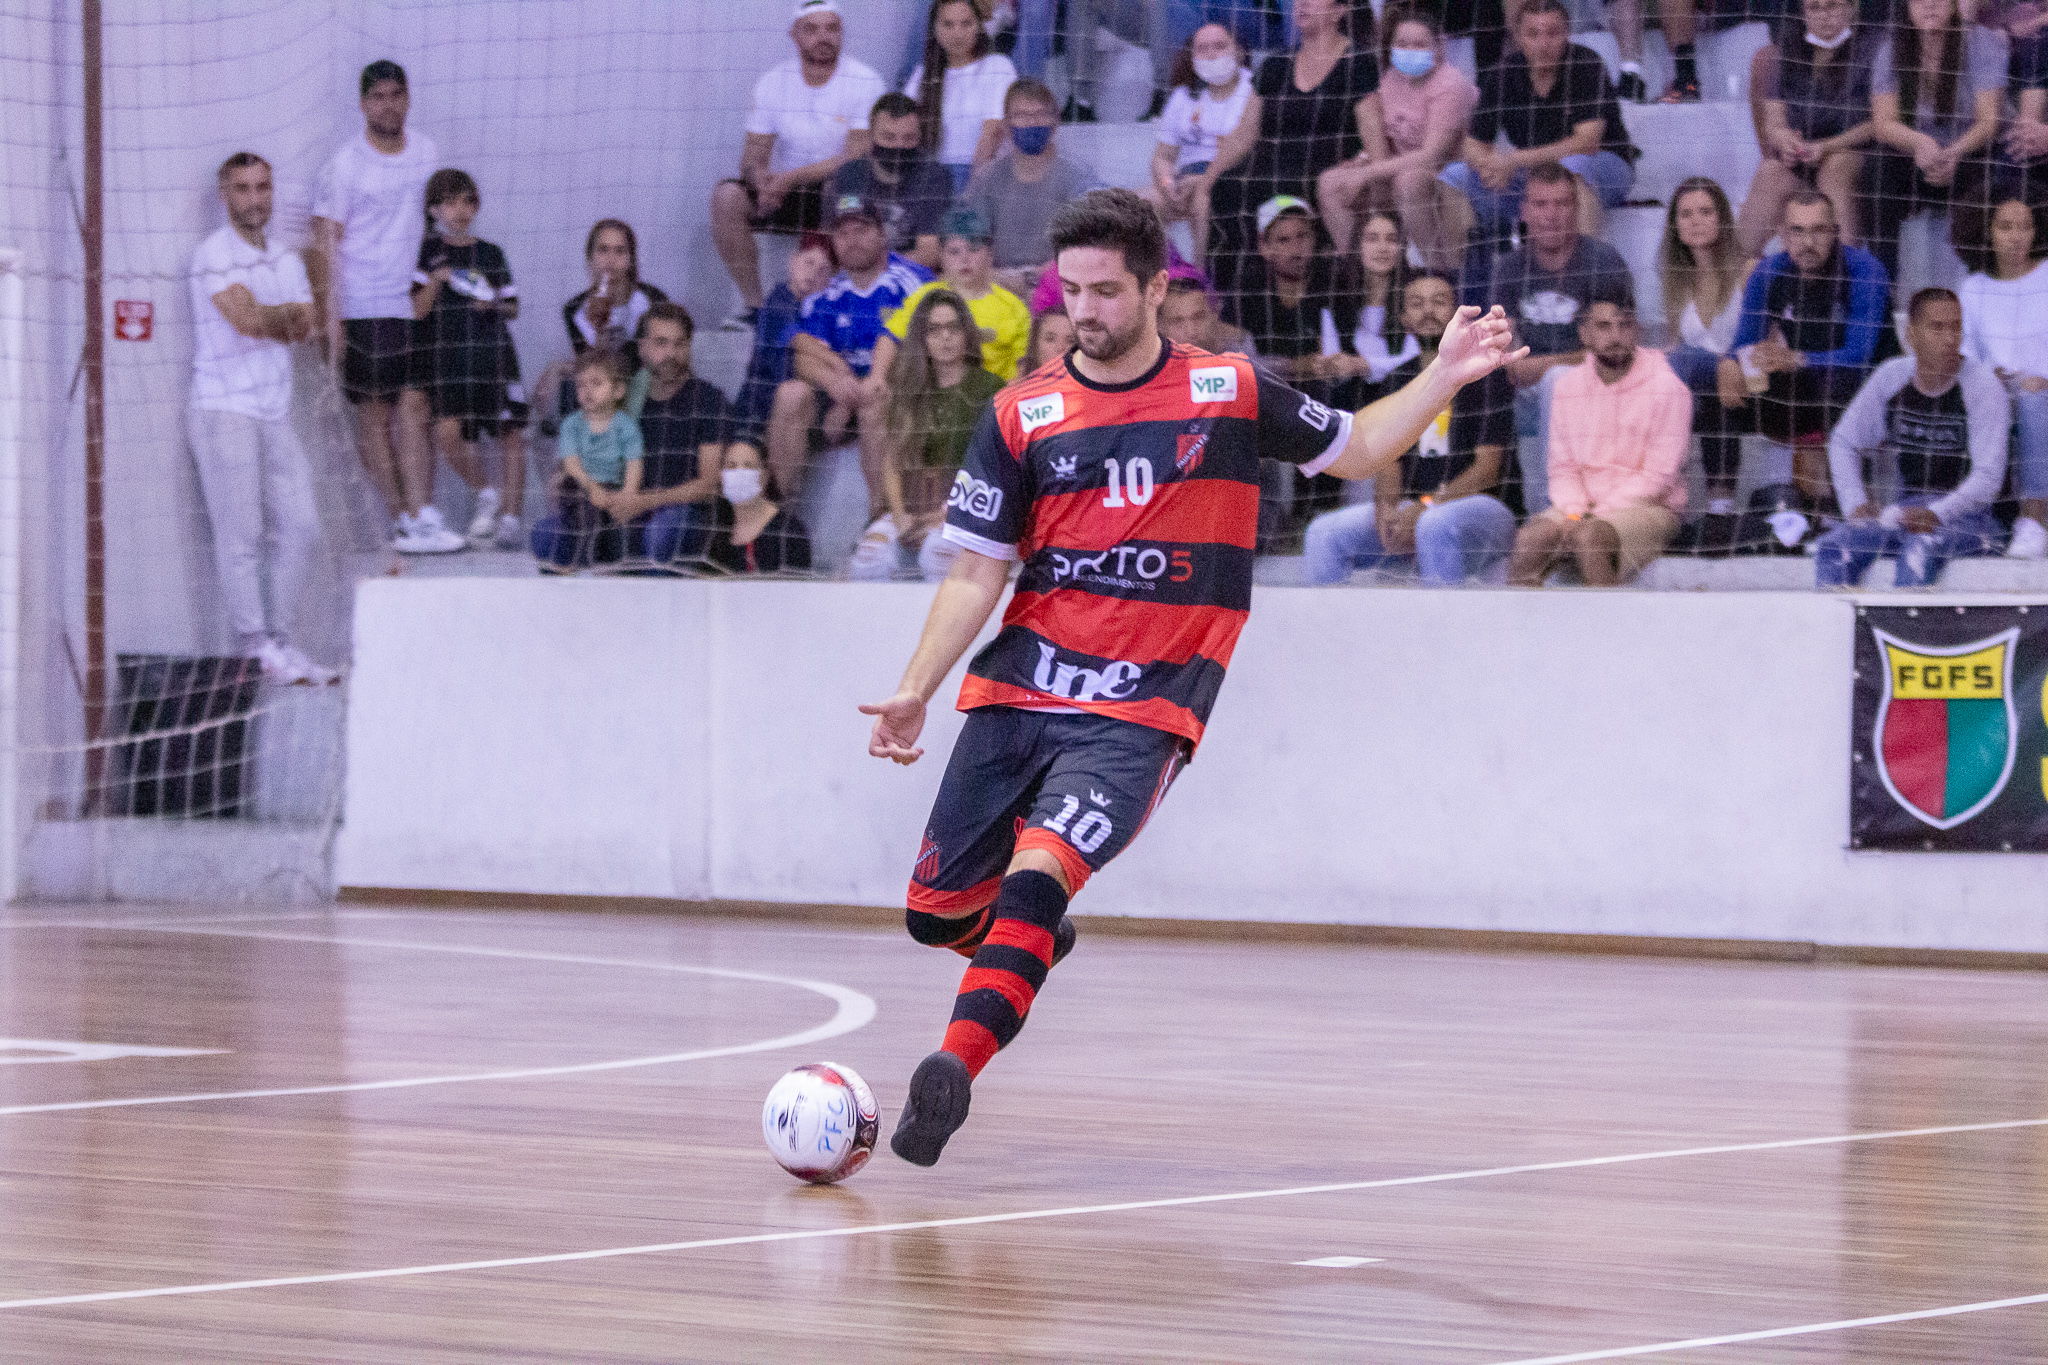 São José Futsal conquista o título da Liga Paulista pela 1ª vez